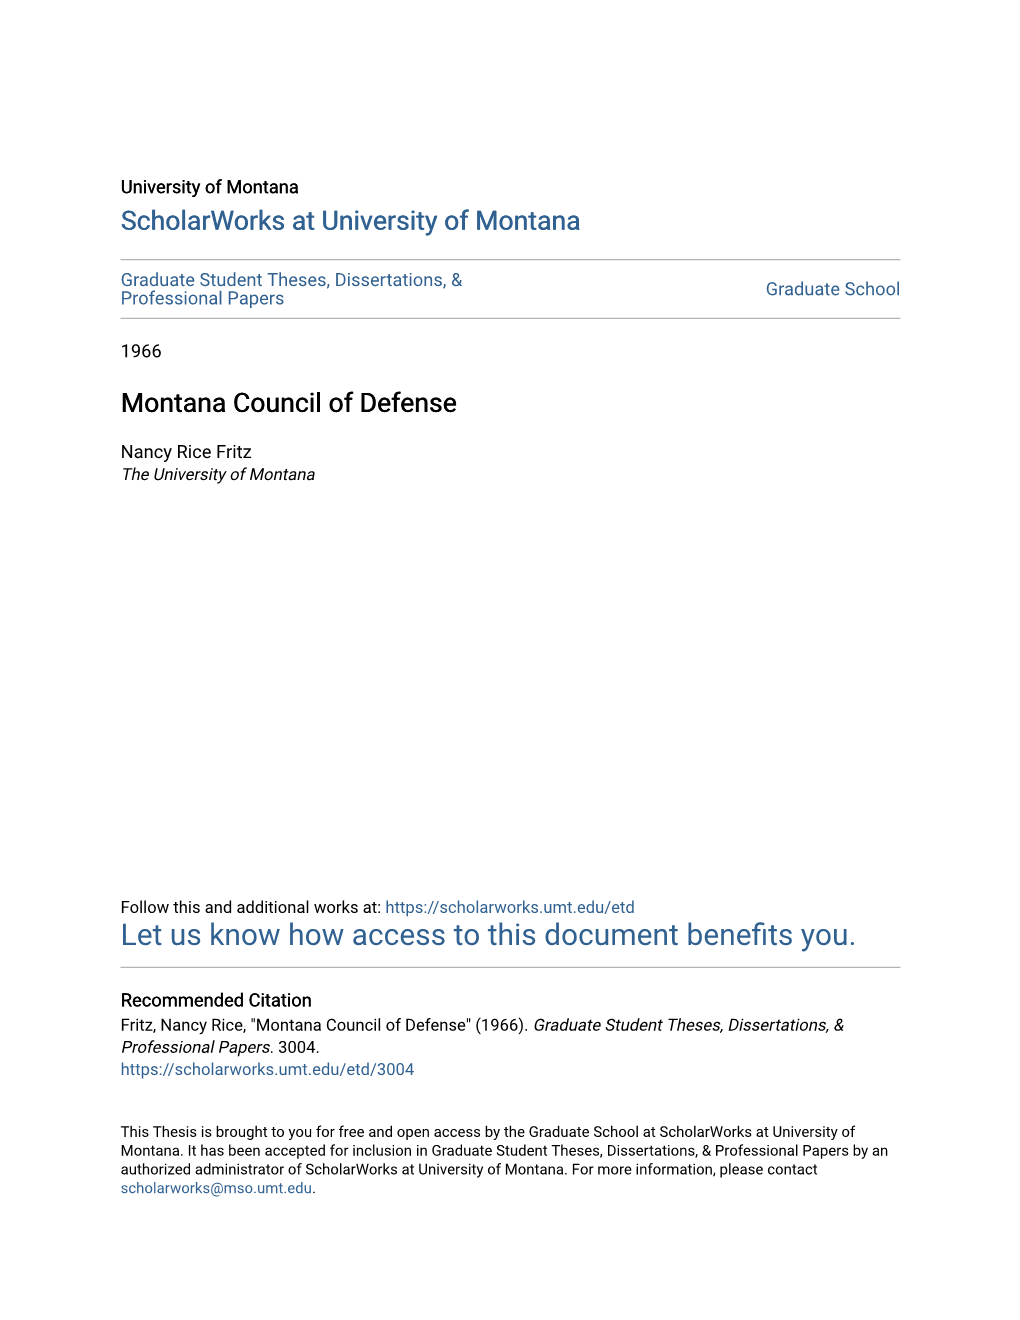 Montana Council of Defense